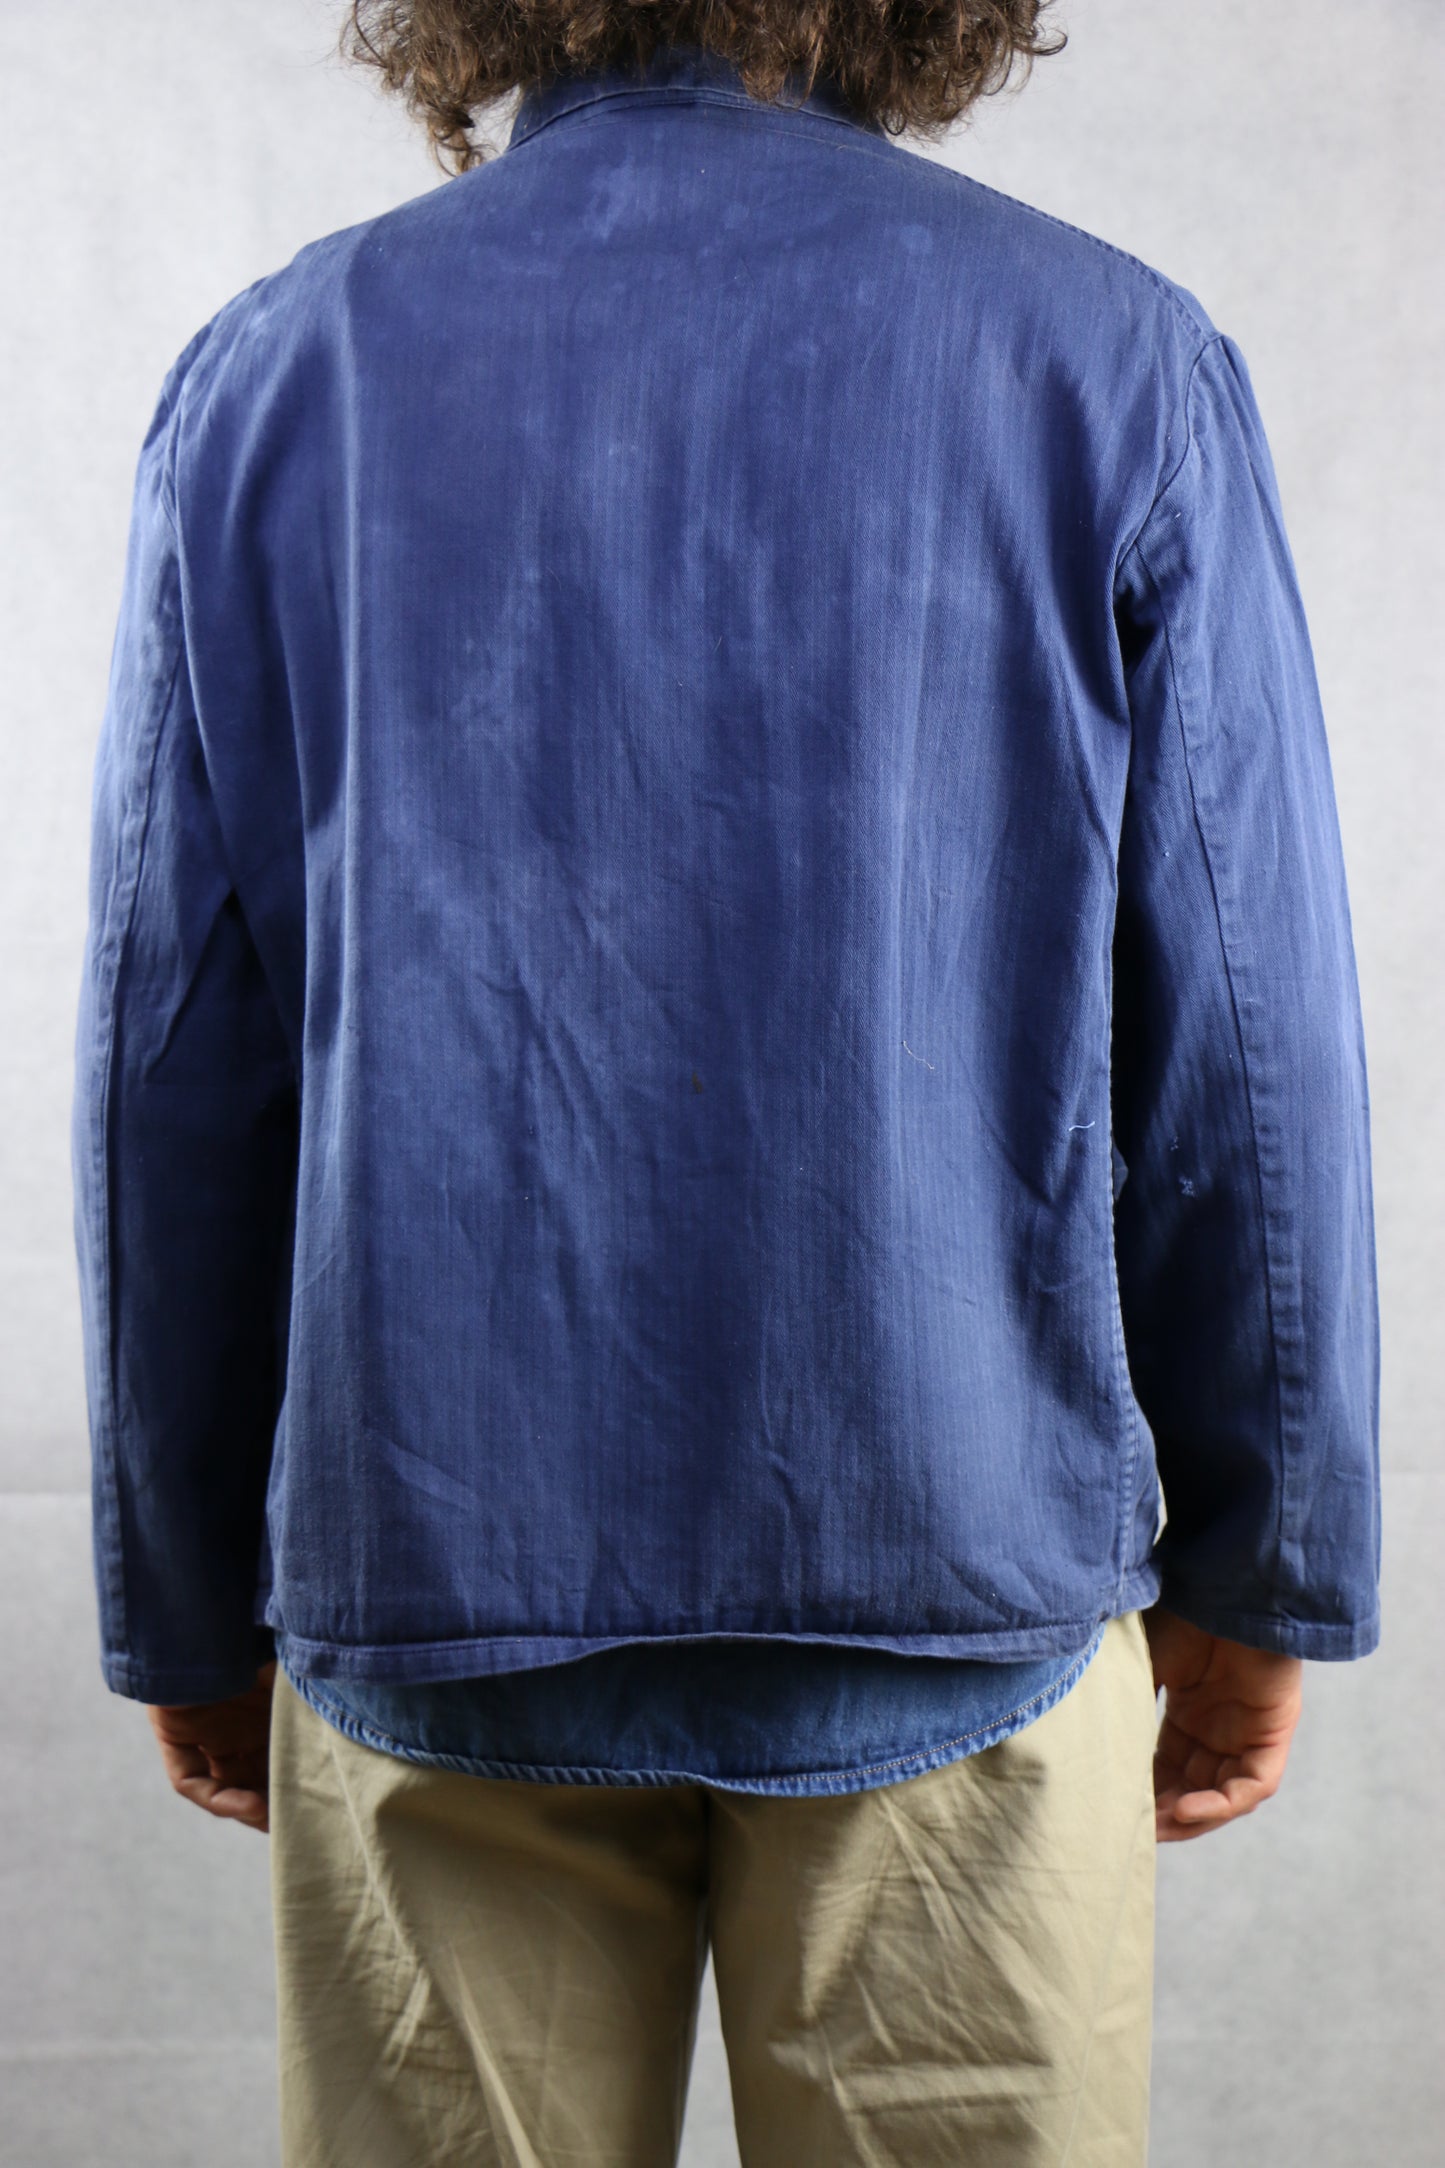 Work Jacket patched L/50 - vintage clothing clochard92.com